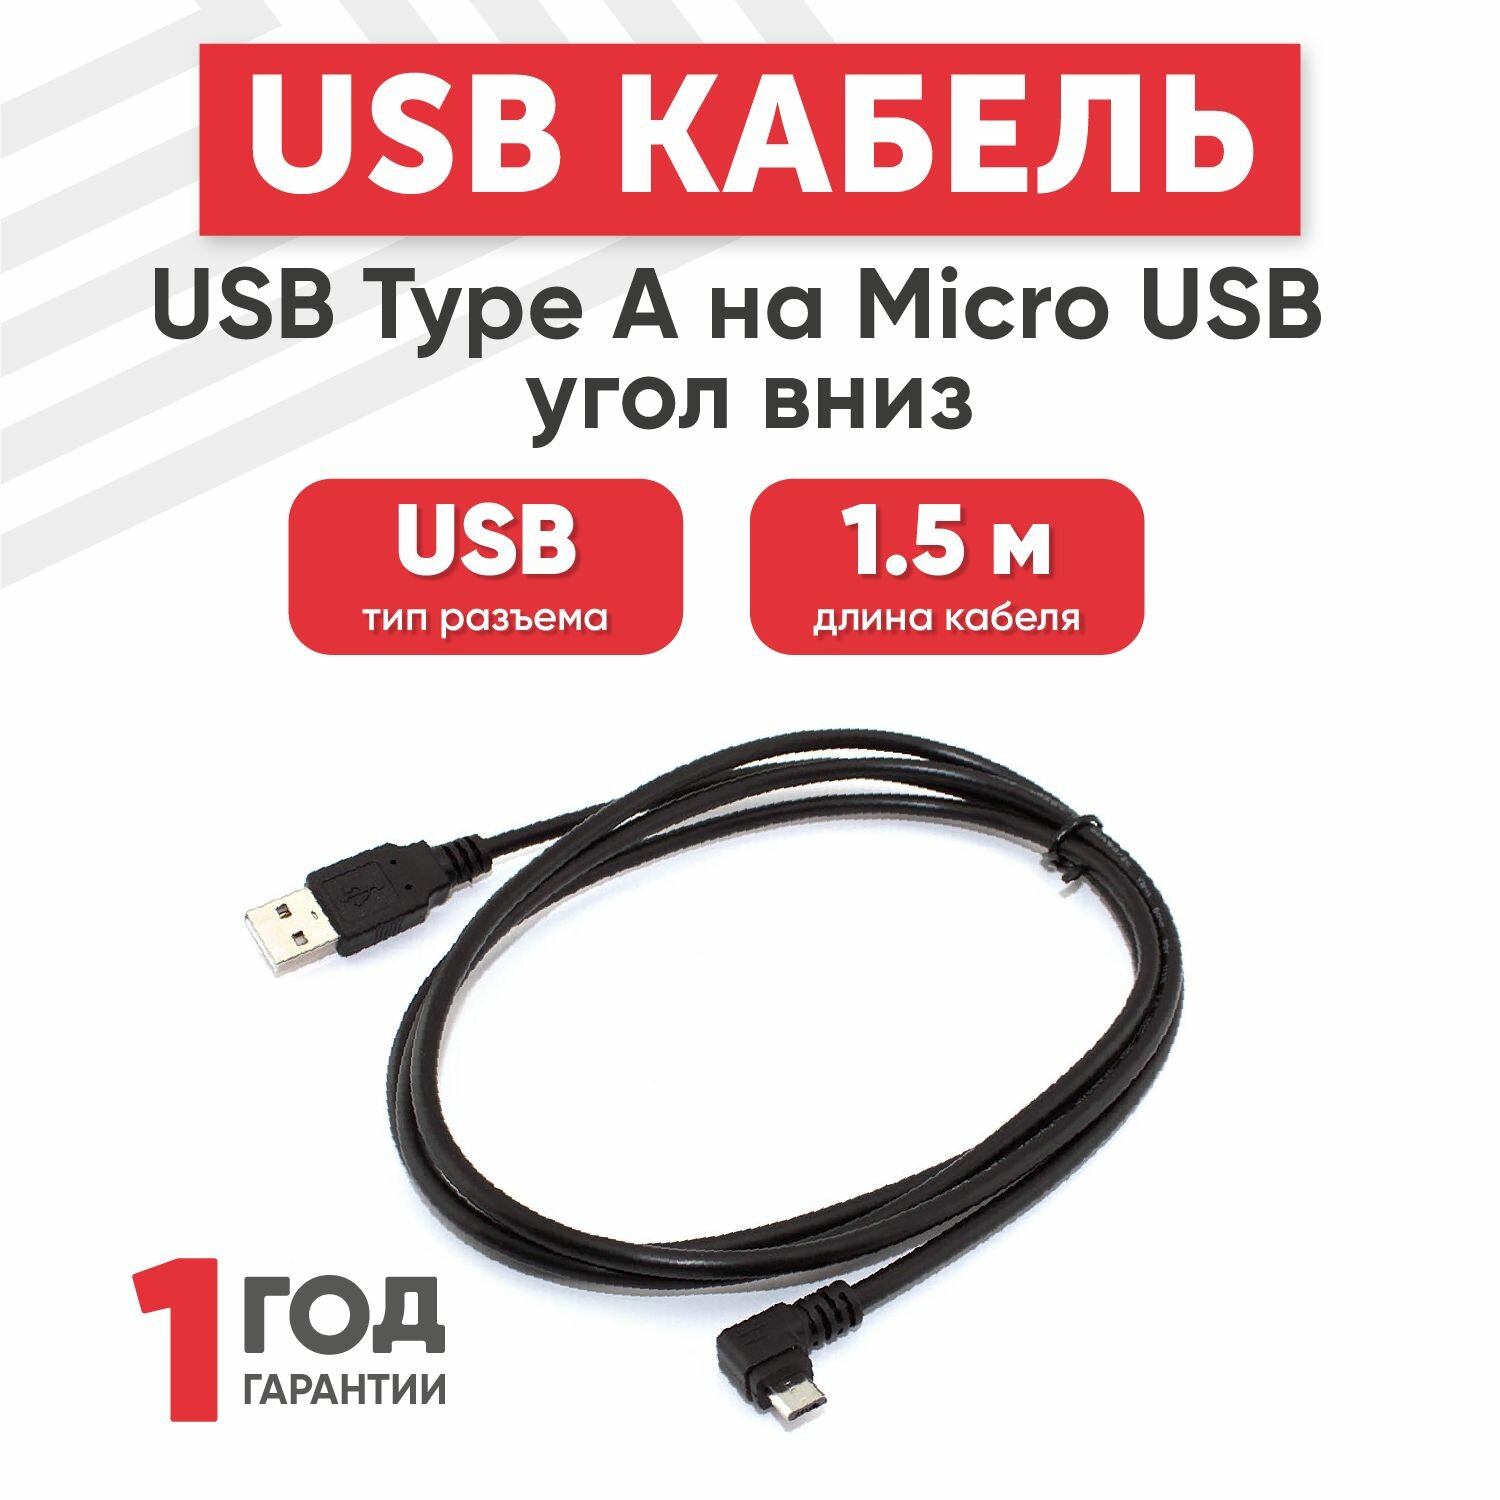 Кабель USB Type-A на MicroUSB угол вниз, длина 1.5 метра